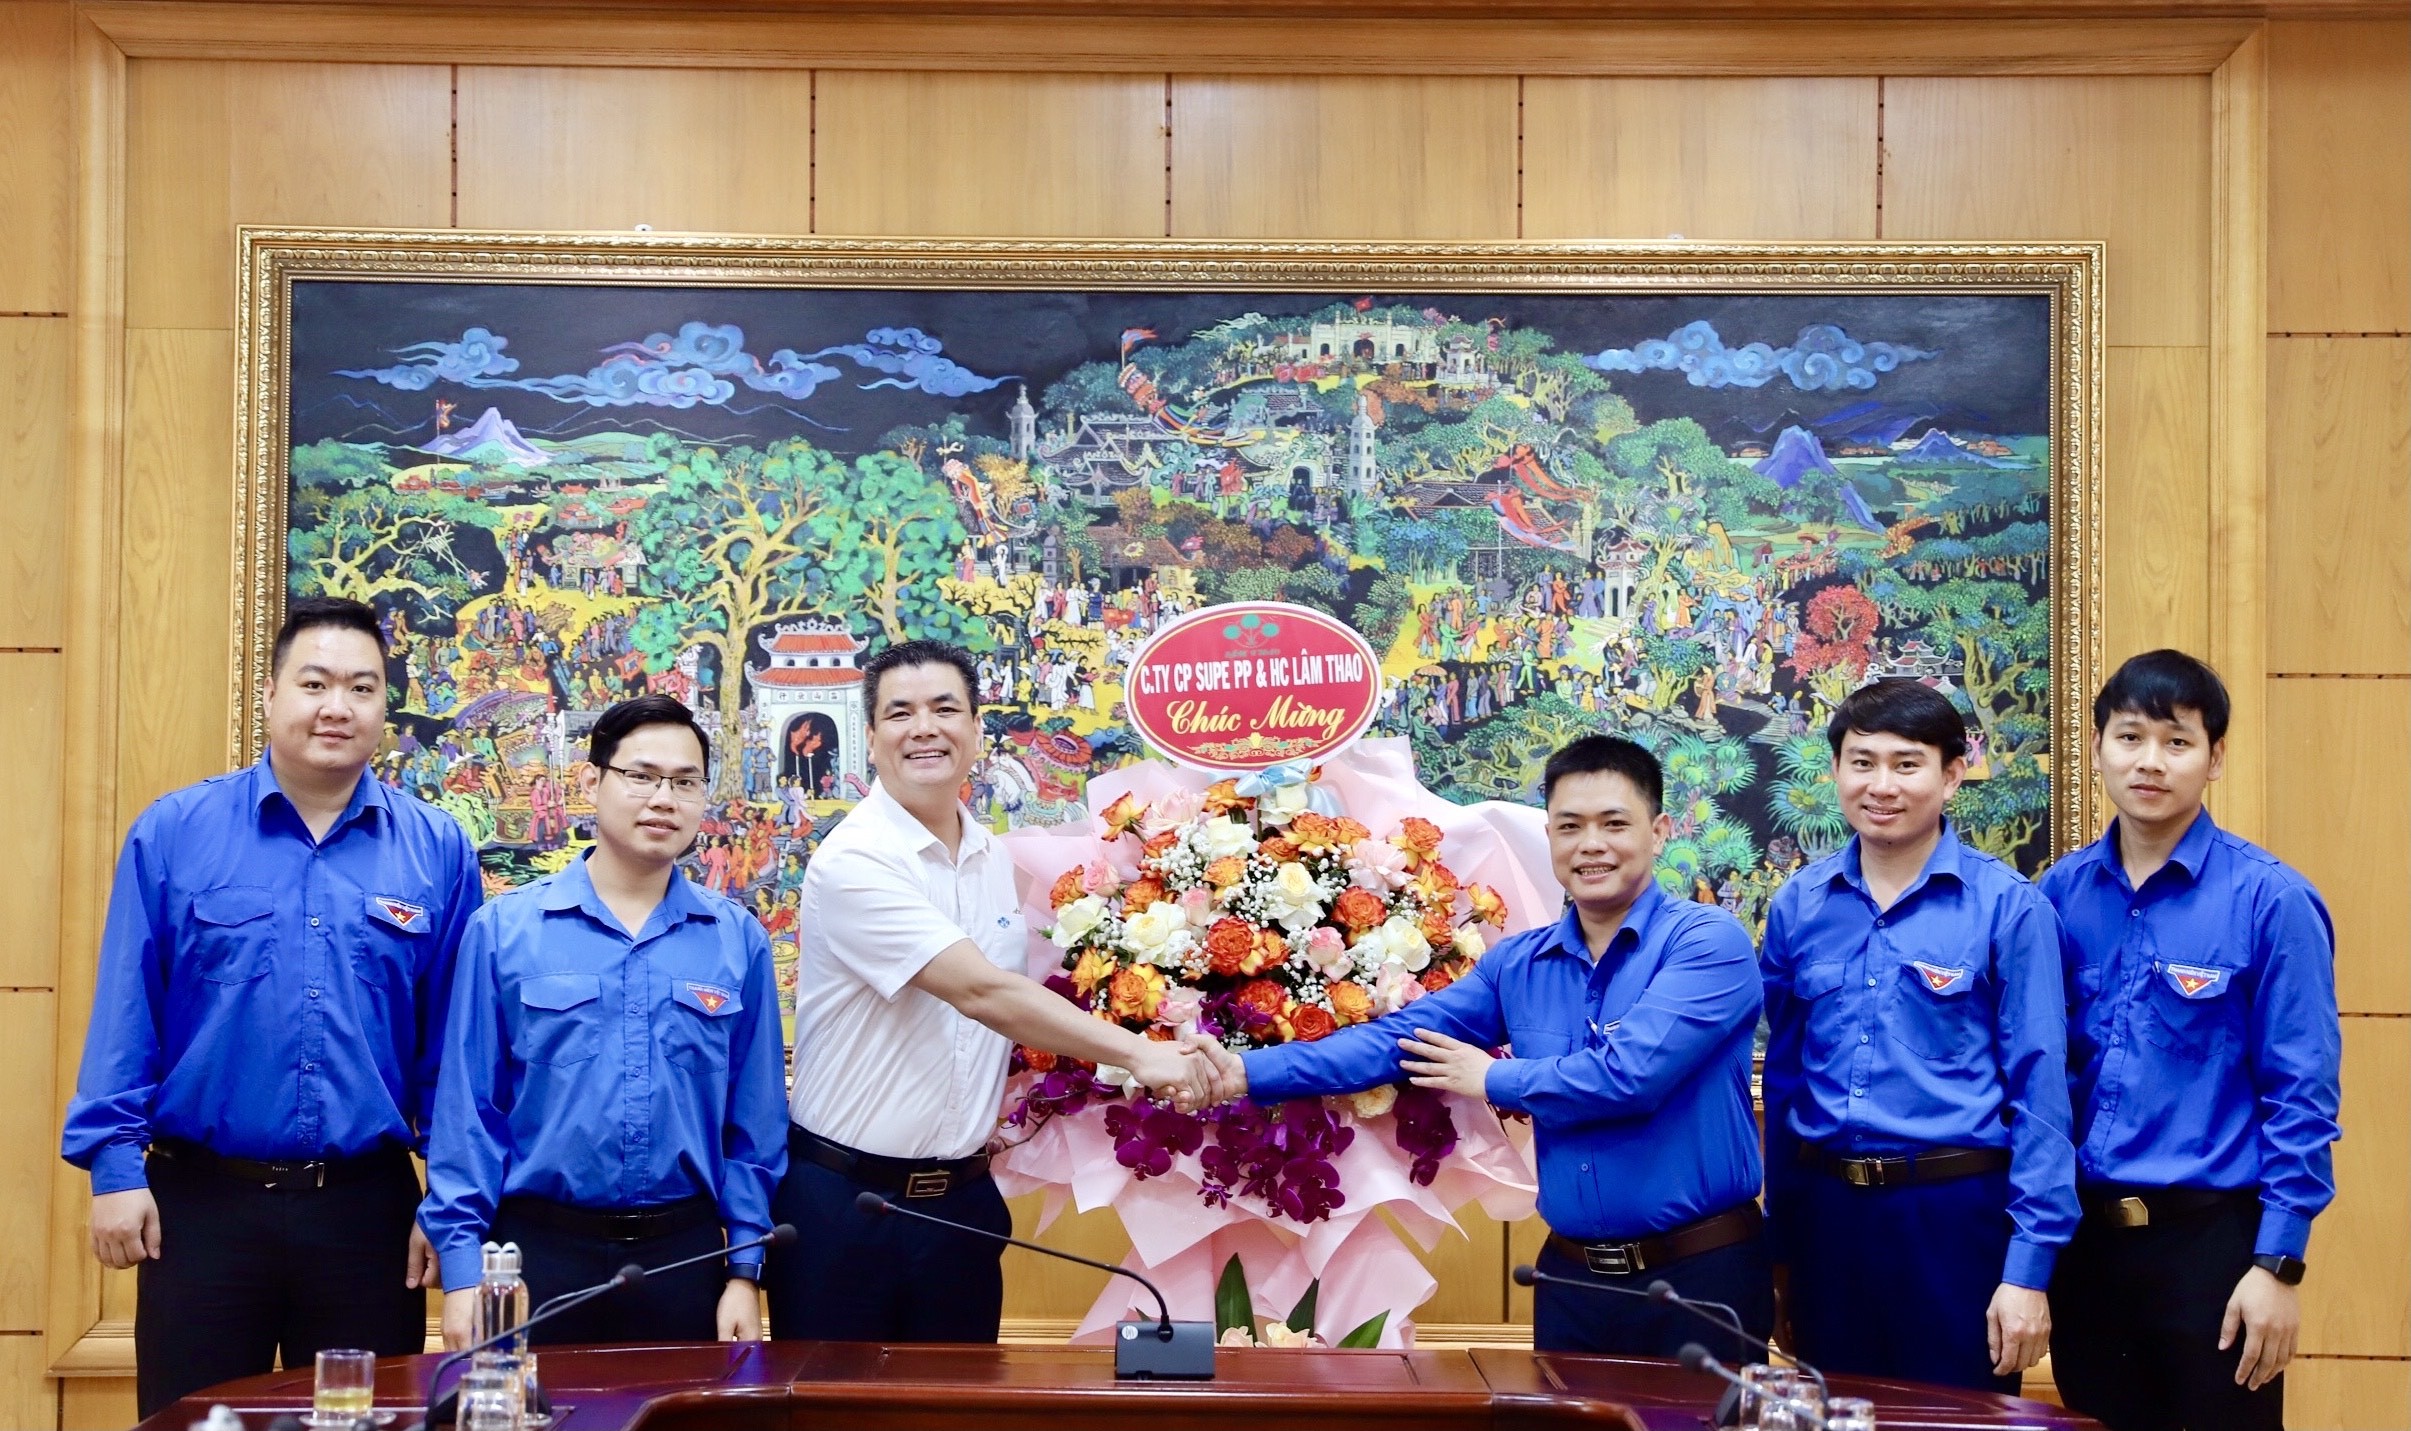 Lãnh đạo Công ty tặng hoa chúc mừng Đoàn Thanh niên Công ty nhân dịp kỷ niệm 92 năm Ngày thành lập Đoàn Thanh niên Cộng sản Hồ Chí Minh